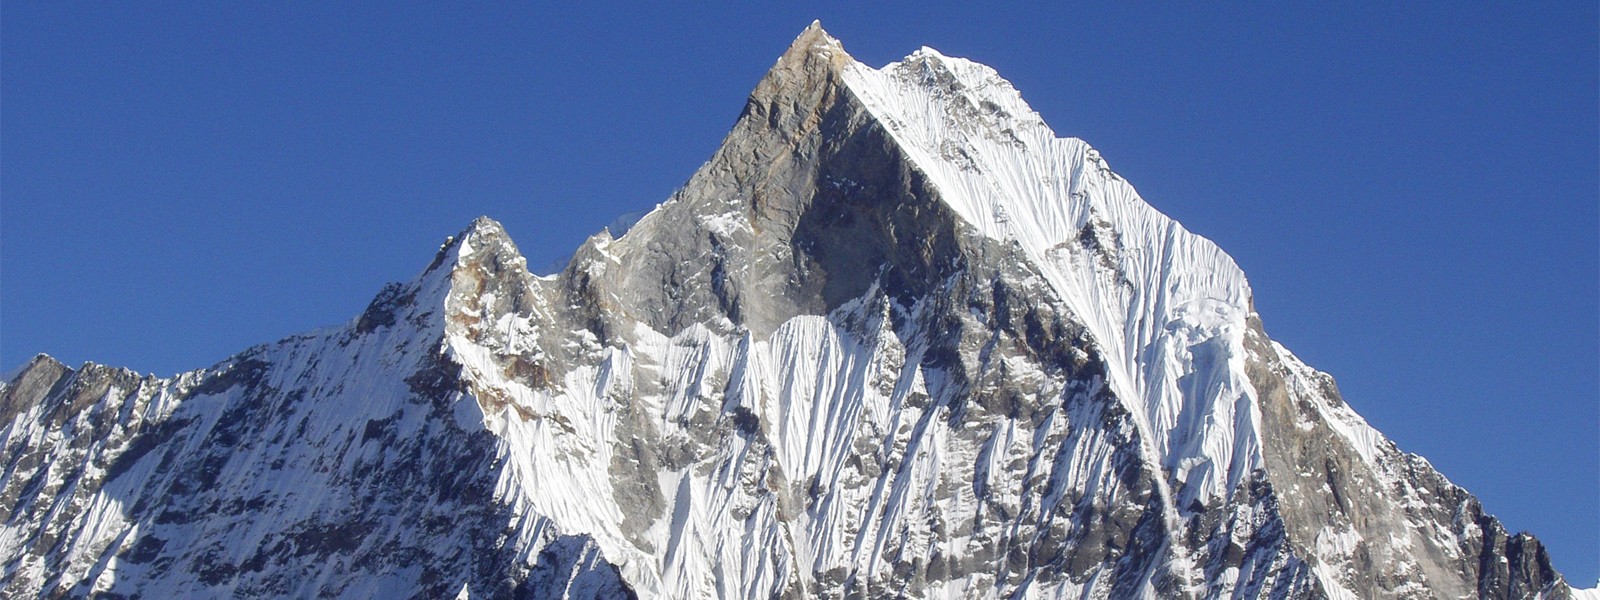 Annapurna, Chitwan and Everest - A combining Trek